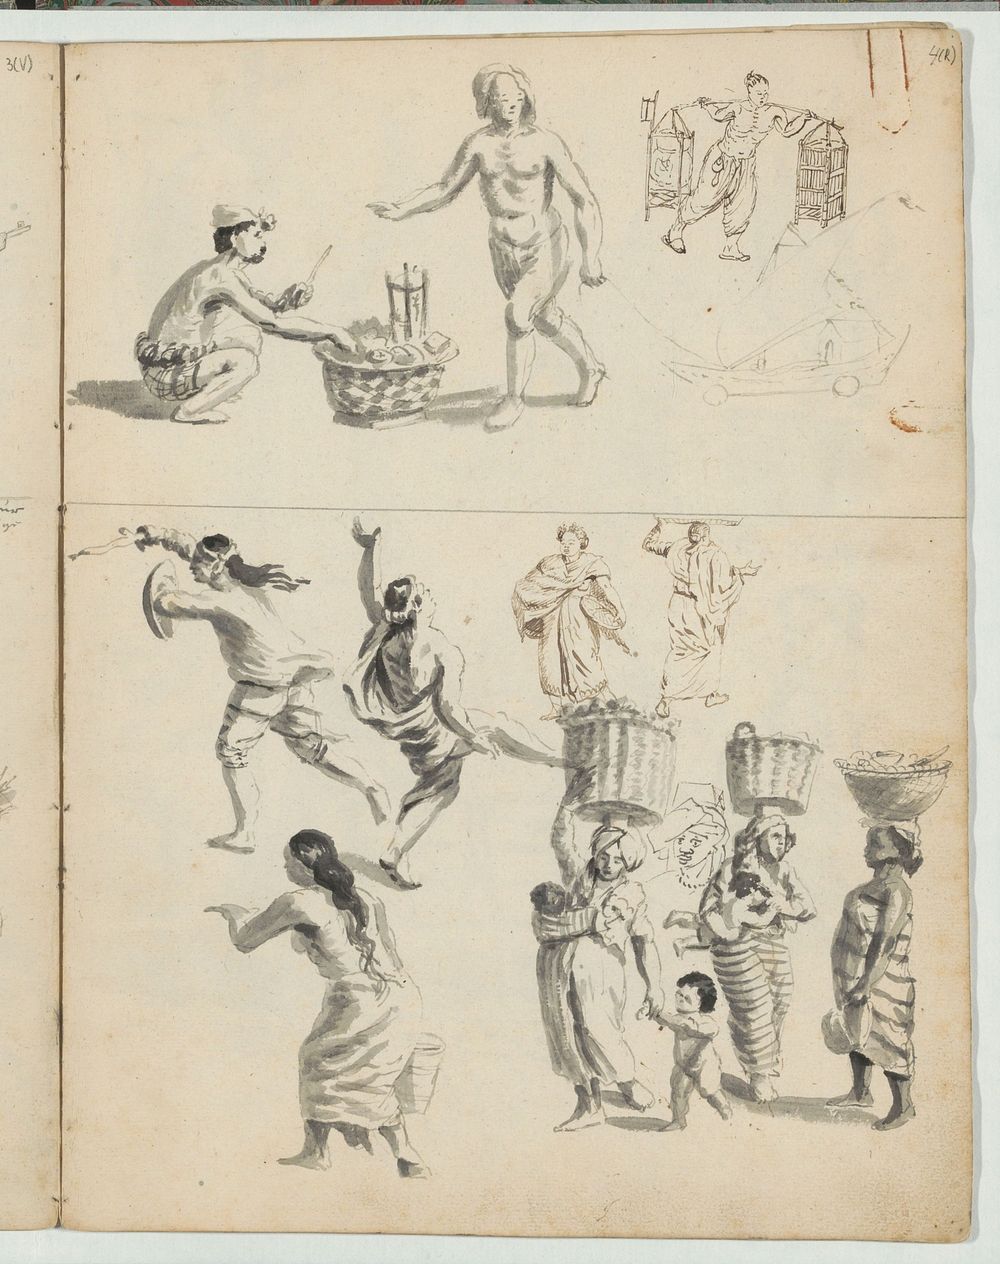 Studieblad met lastdragers, dansers en vrouwen met manden op het hoofd (c. 1660) by Wouter Schouten and Cornelis de Bruyn